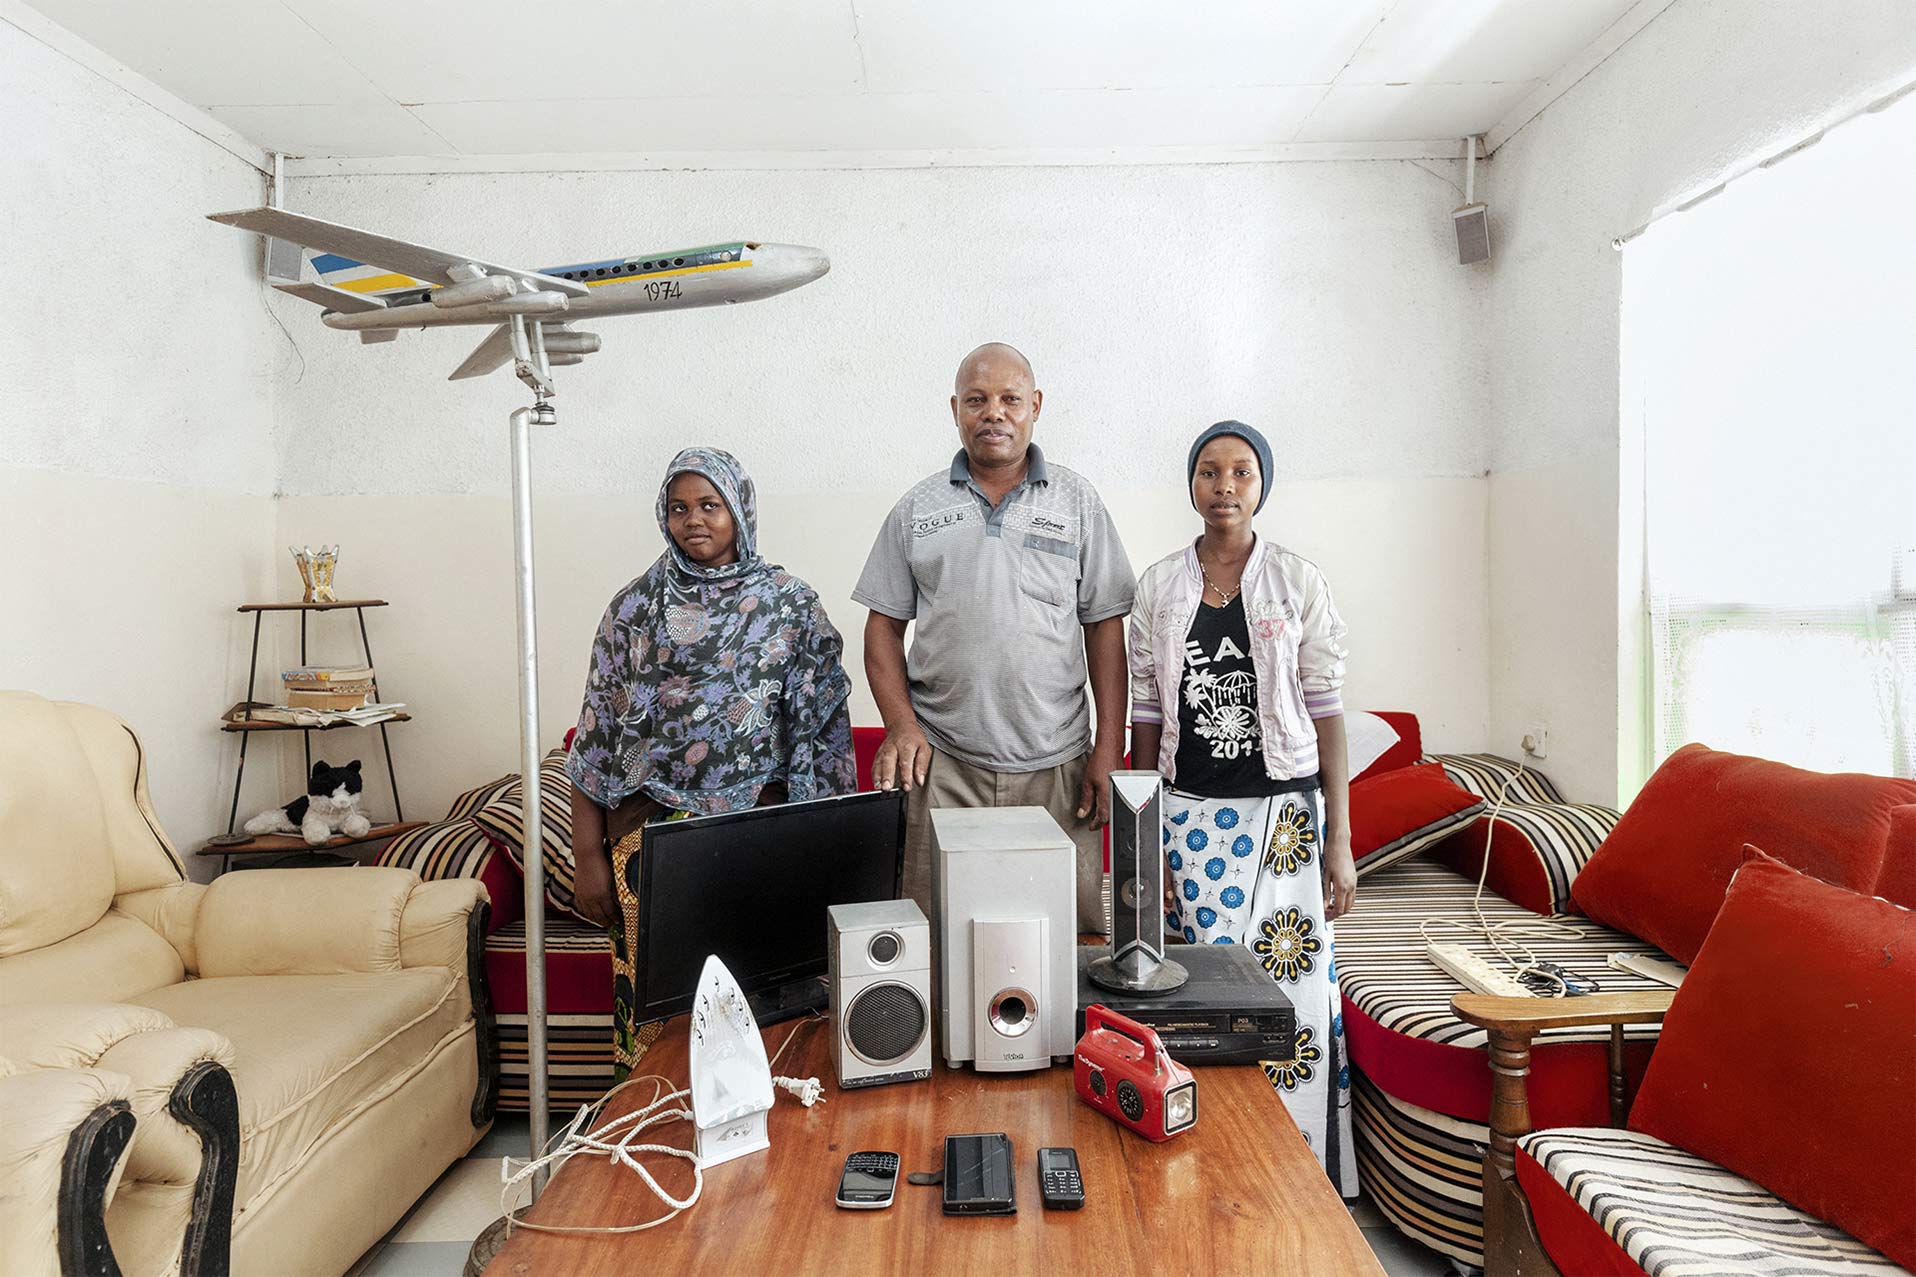  Elettrodomestici di una famiglia africana. Energy portraits - Reportage del fotografo Marco Garofalo 